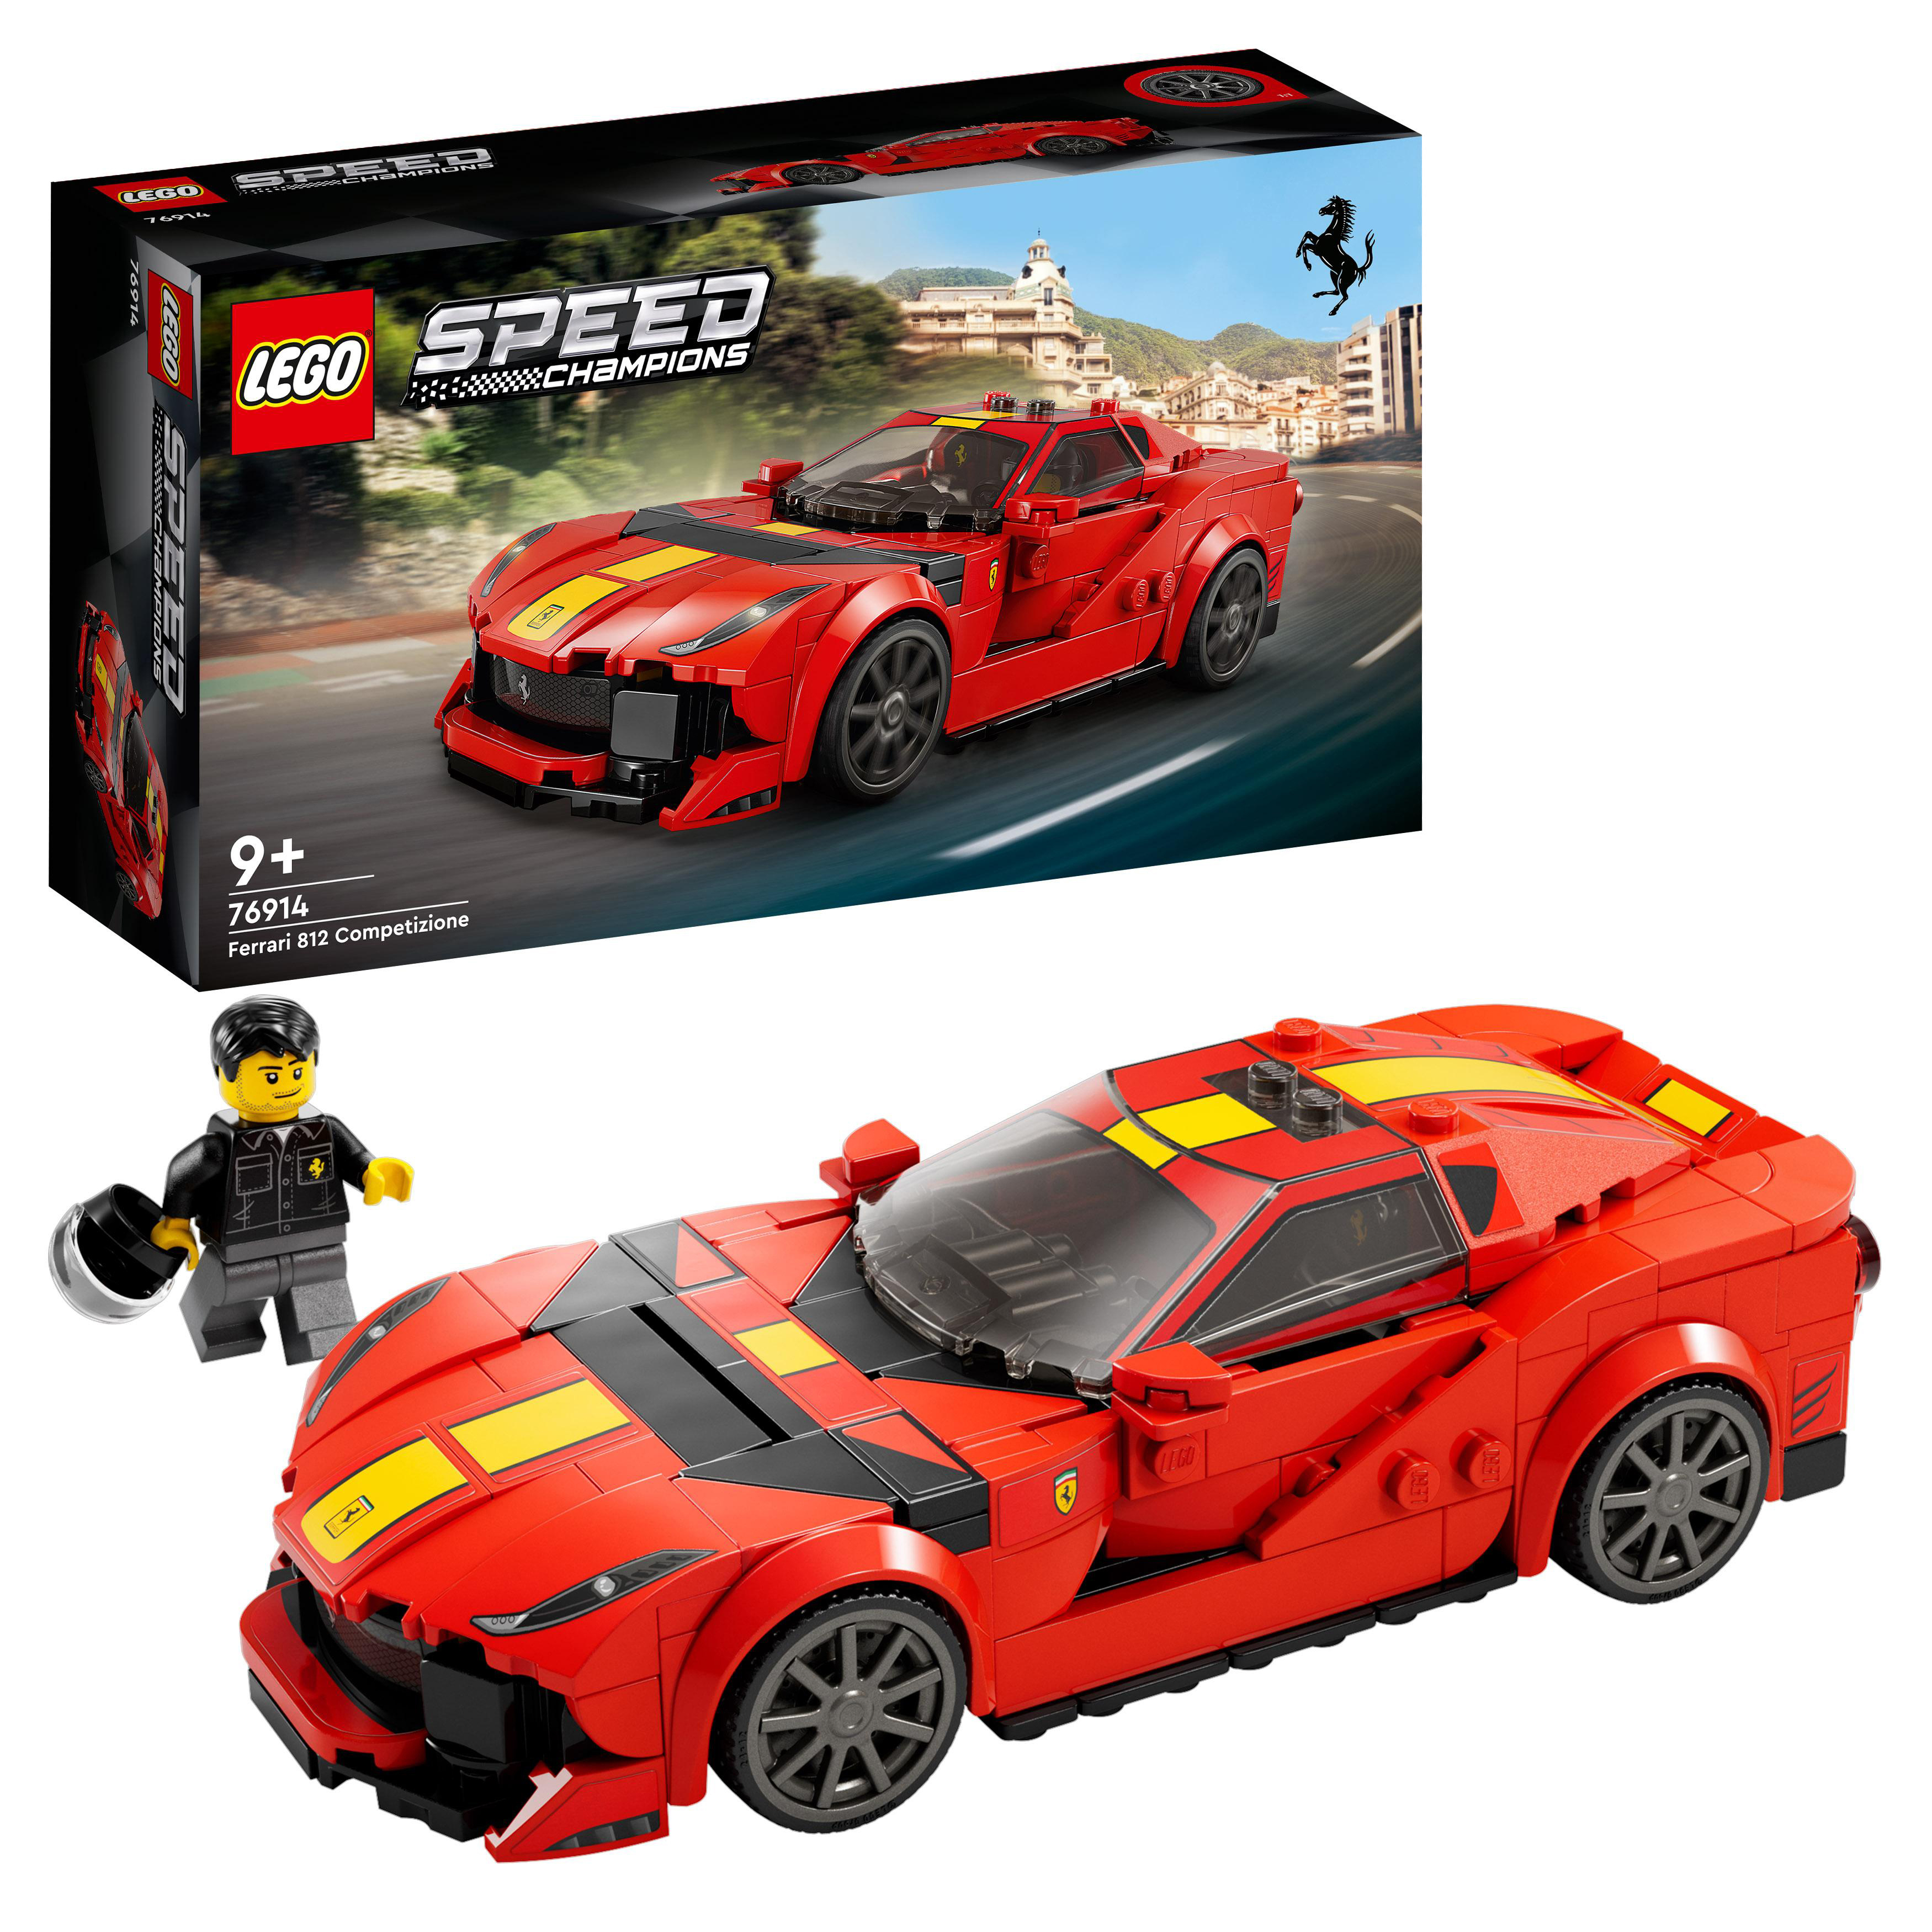 LEGO Speed Champions 76914 Competizione Mehrfarbig Bausatz, 812 Ferrari